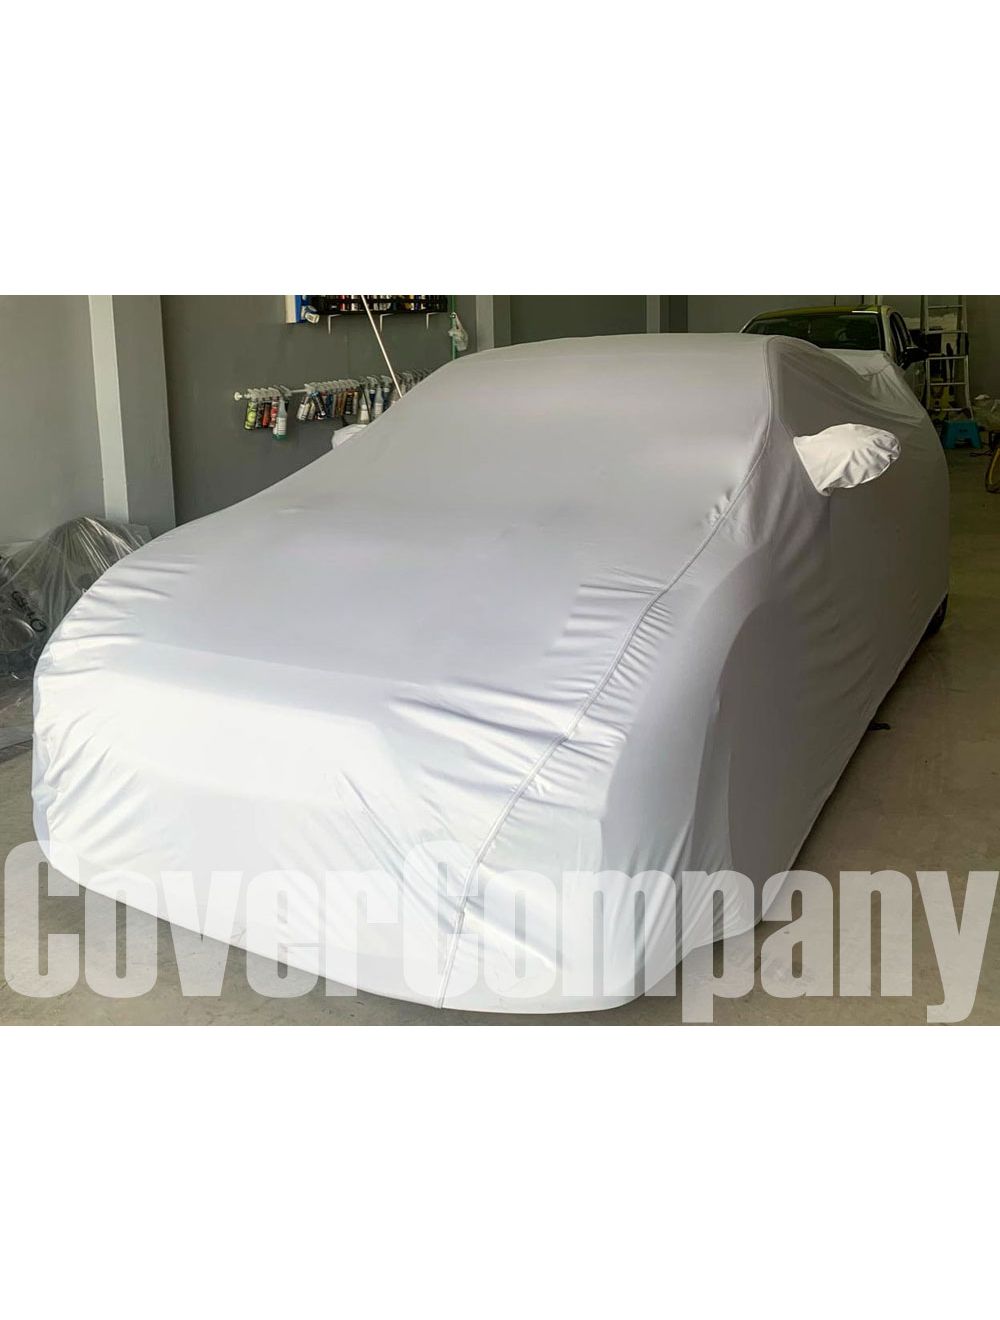 Custom outdoor car cover - Platinum Range